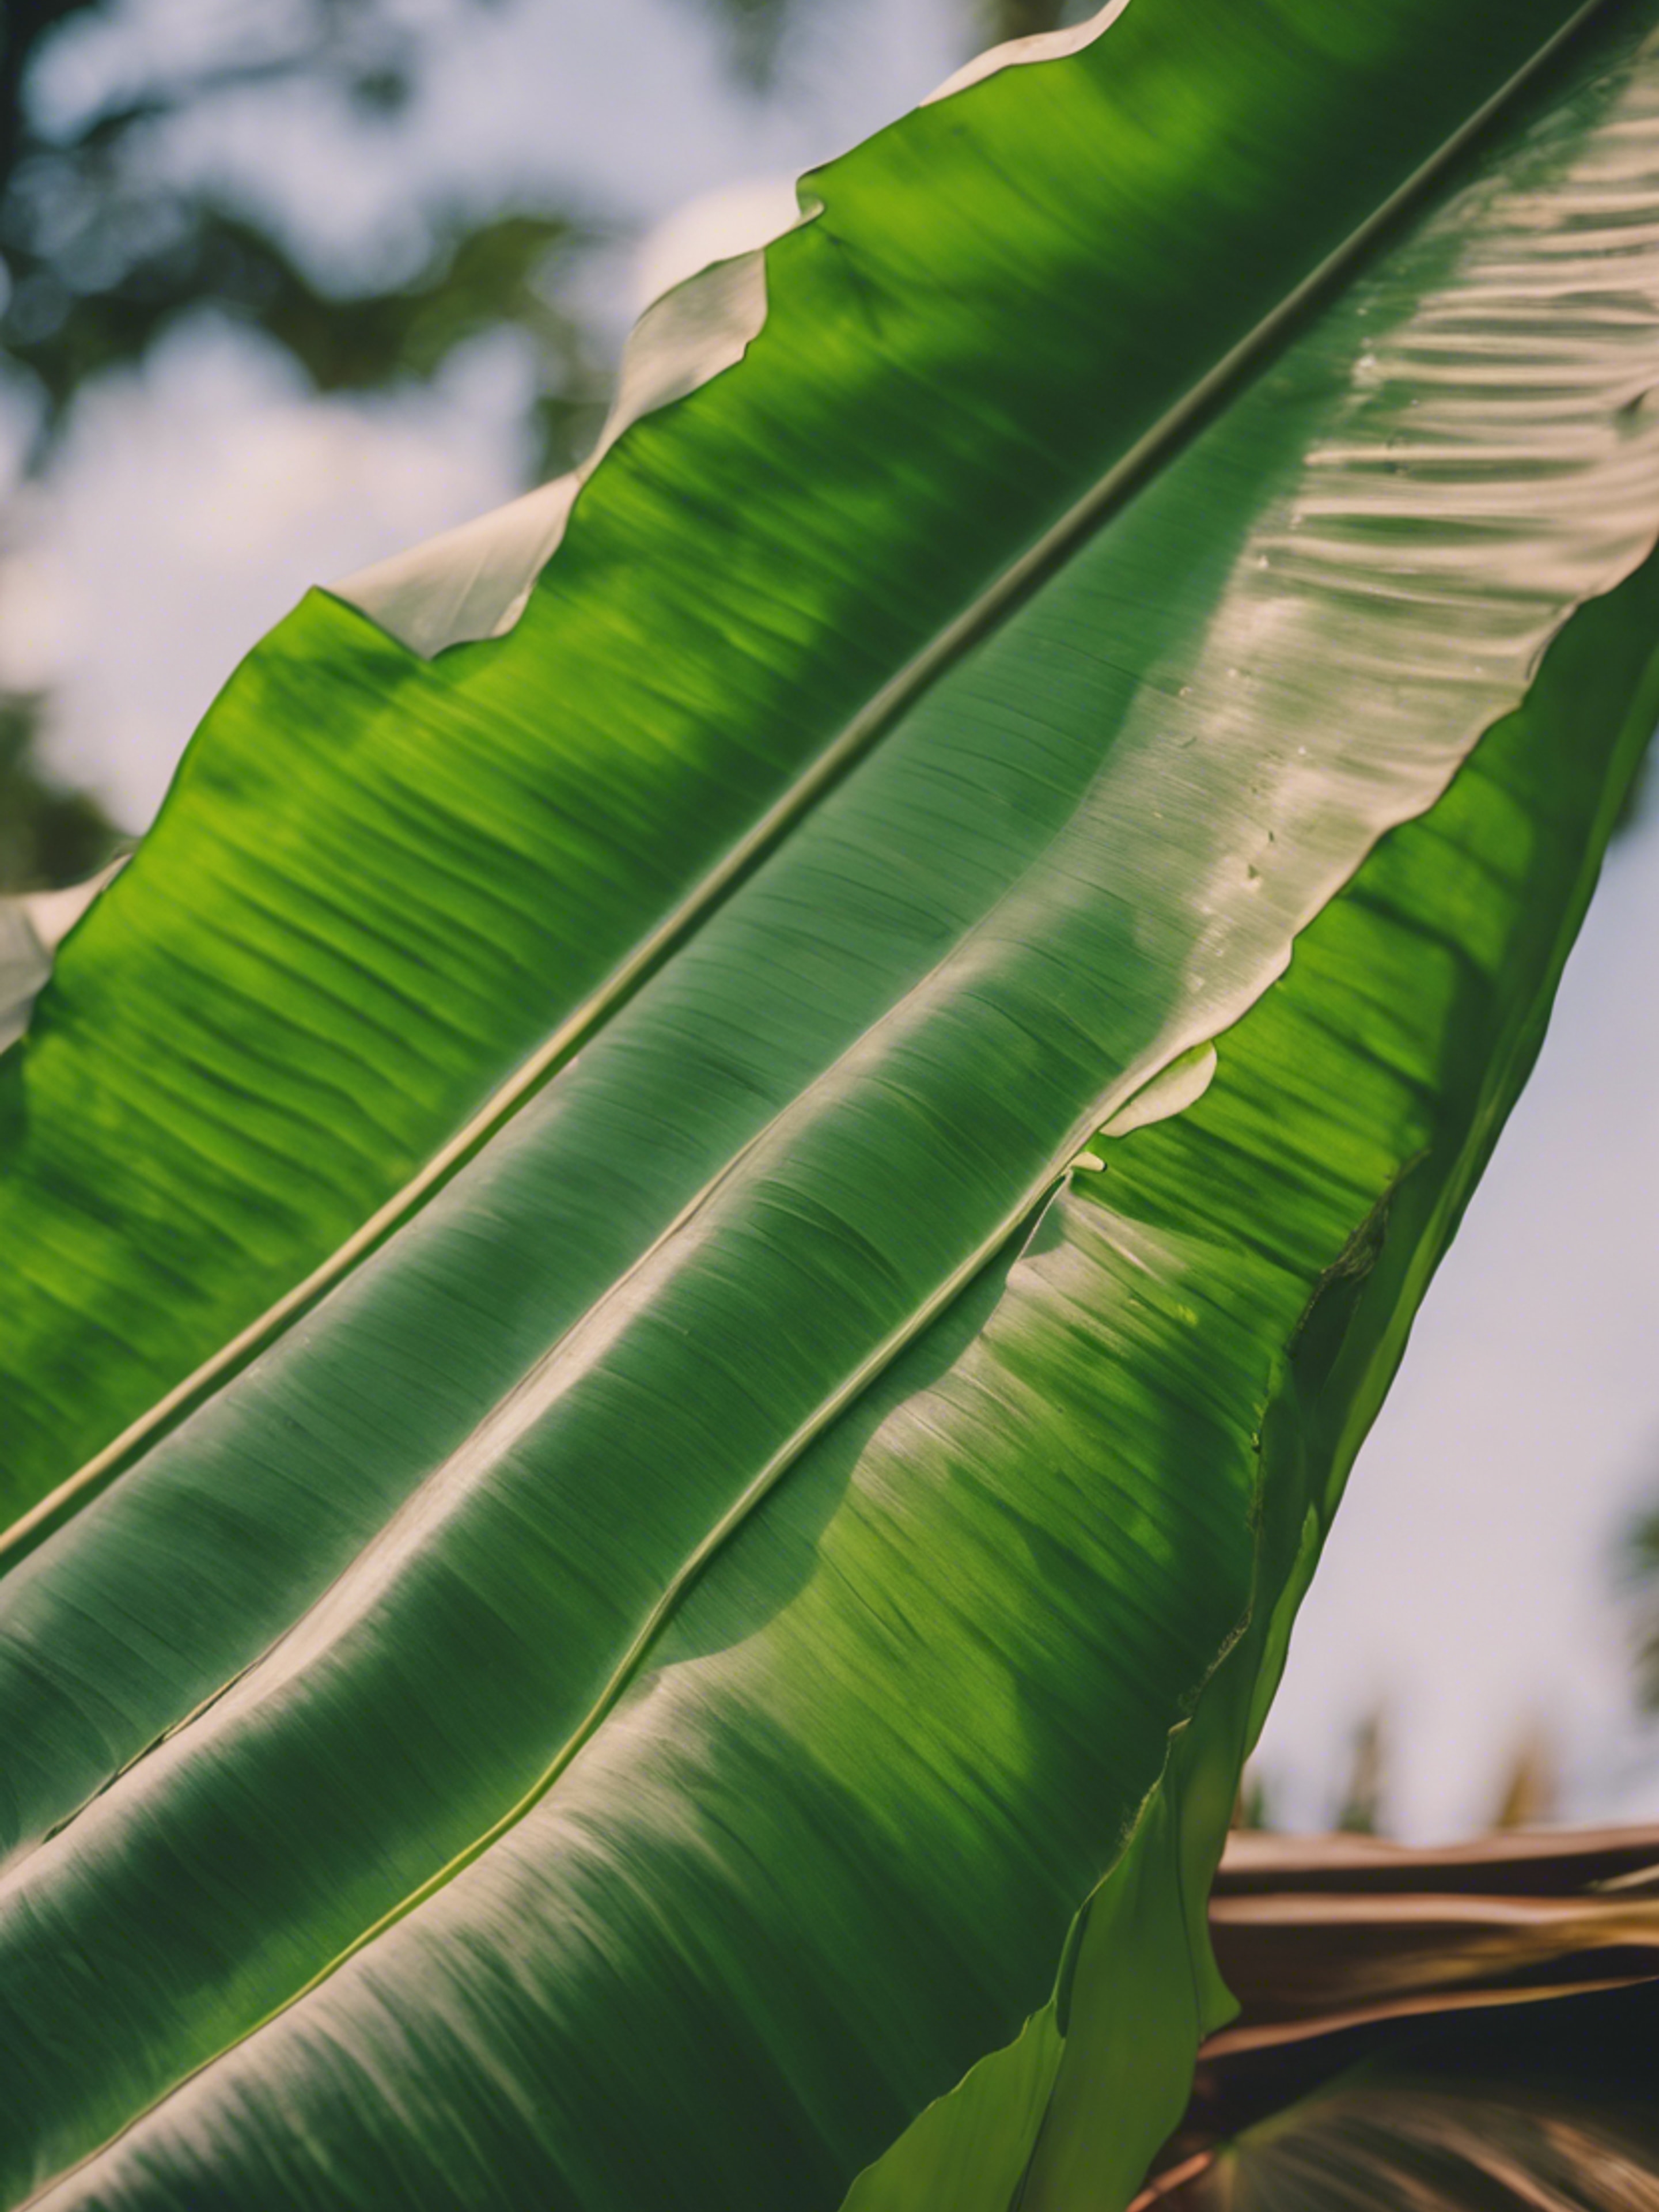 A banana leaf fashioned into a simple but sturdy homemade kite. Hintergrund[67483886efc74c5189dd]